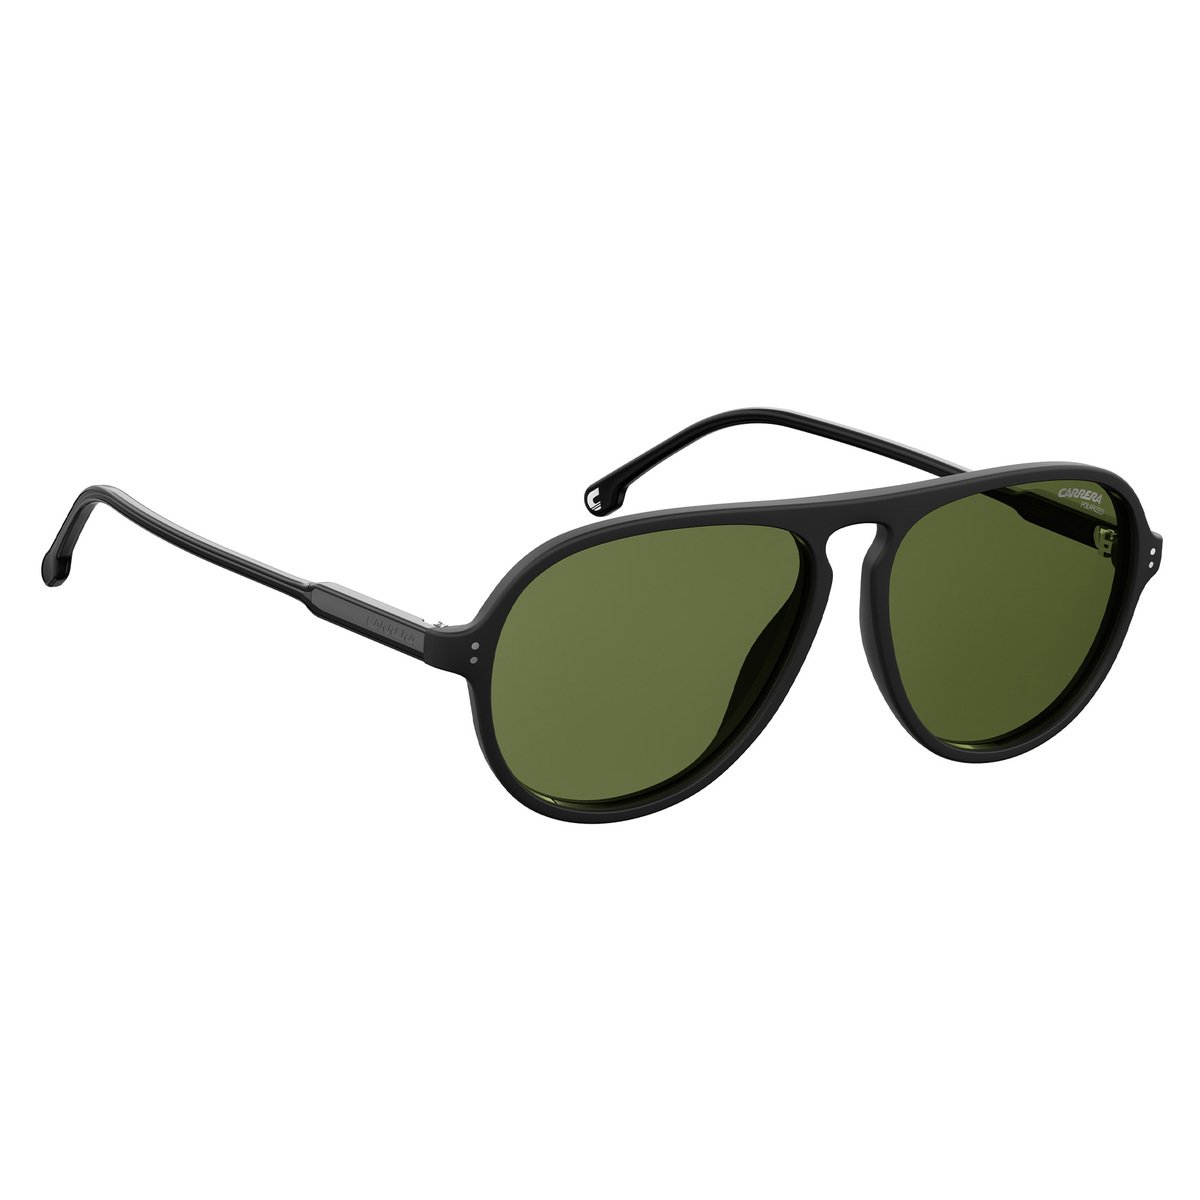 كاريرا نظارة شمسية للجنسين 198S افياتور أخضر